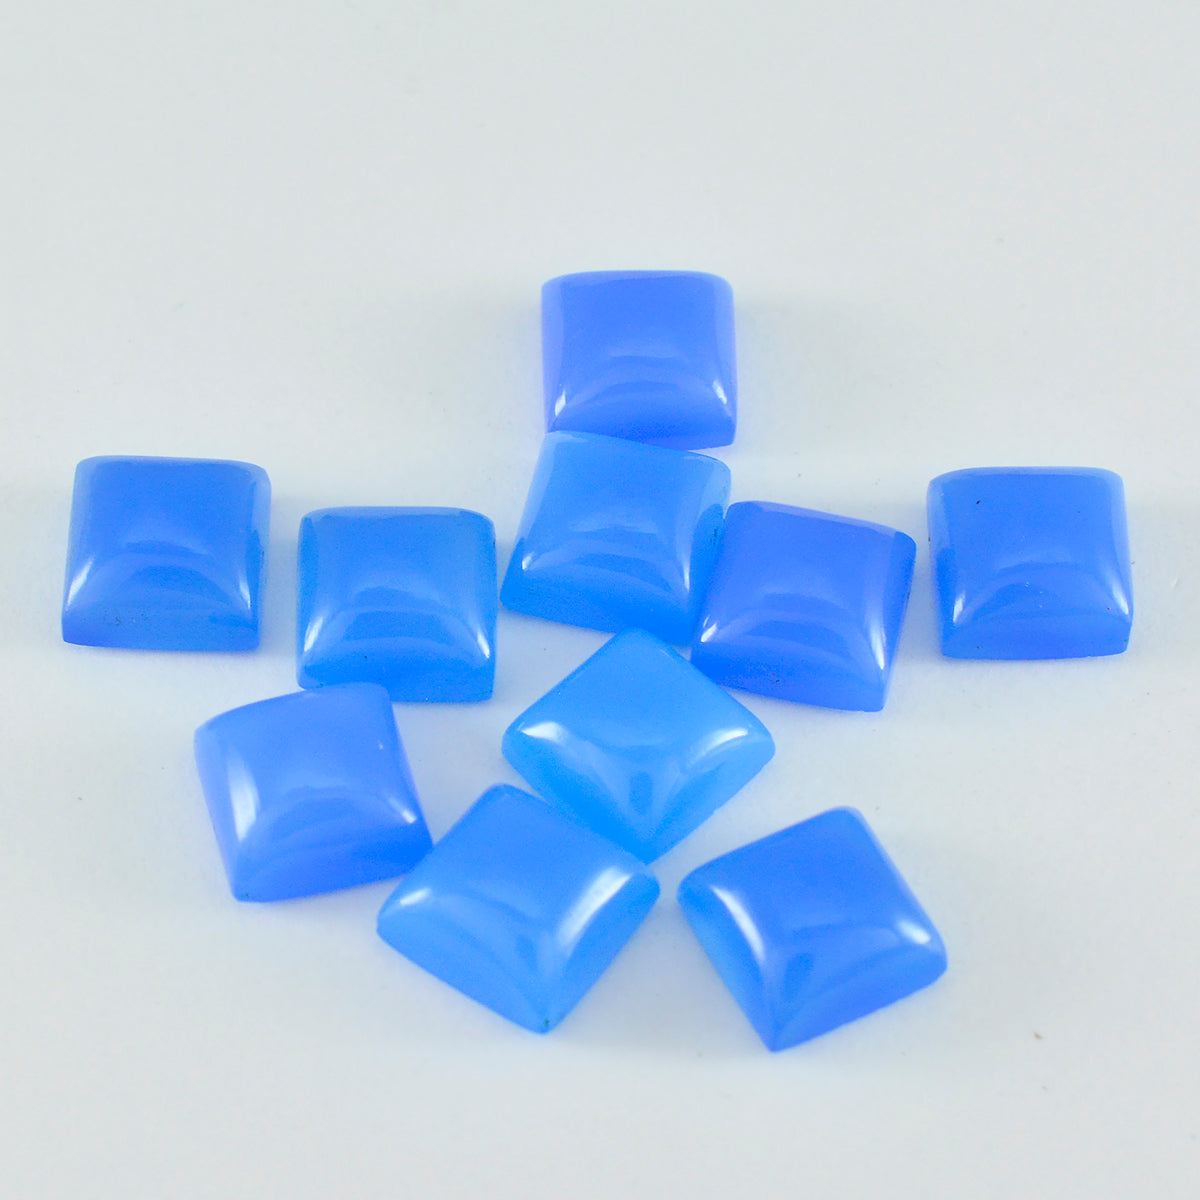 riyogems 1шт синий халцедон кабошон 7x7 мм квадратная форма драгоценные камни отличного качества